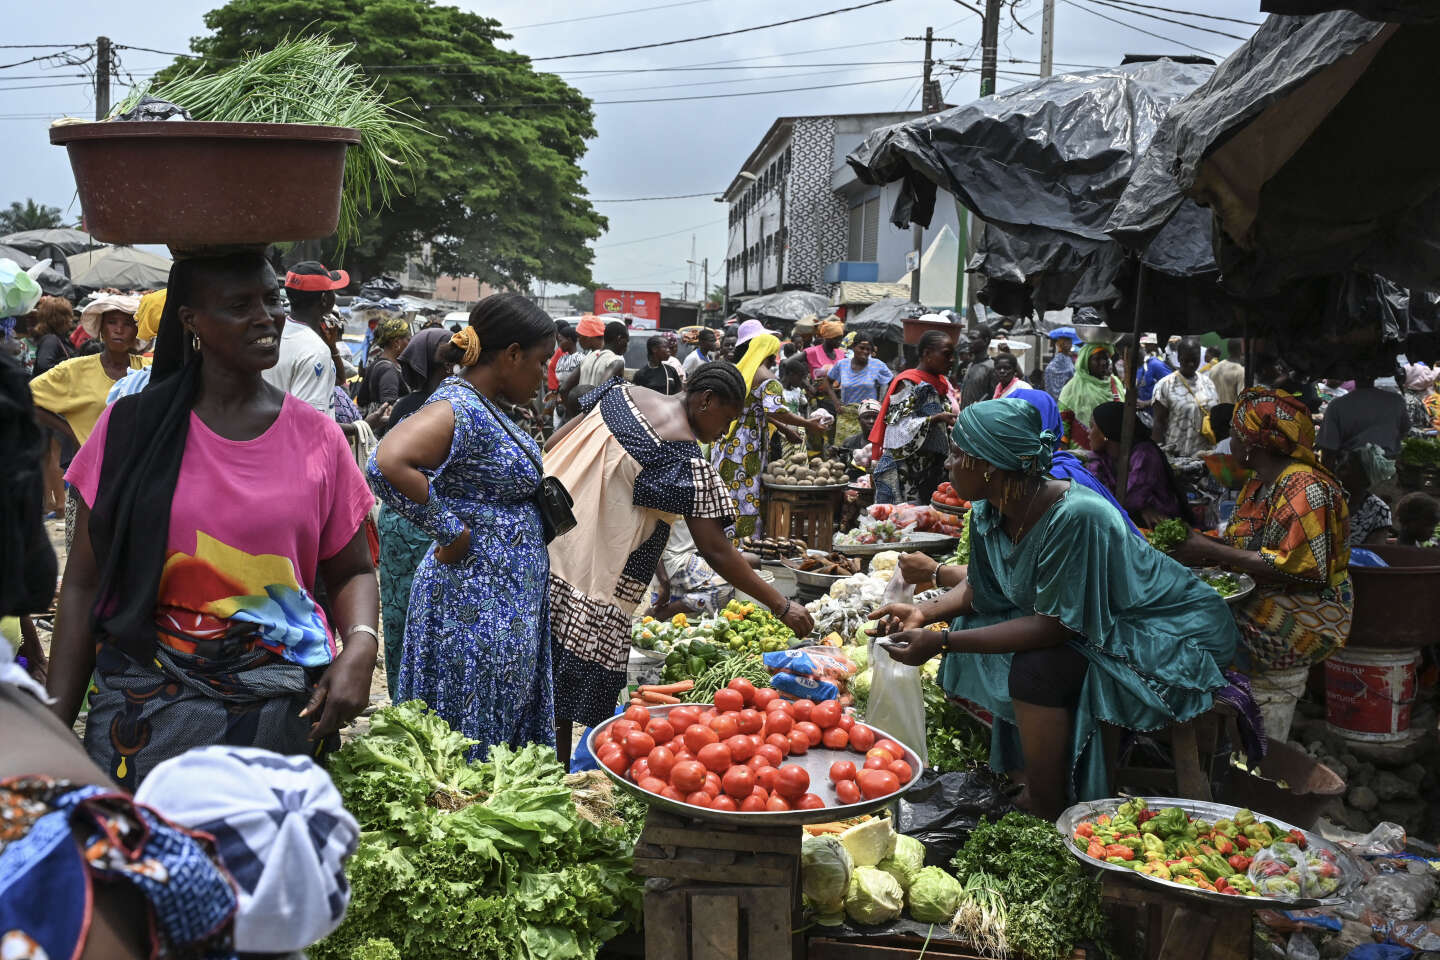 En Afrique subsaharienne, une reprise économique si fragile